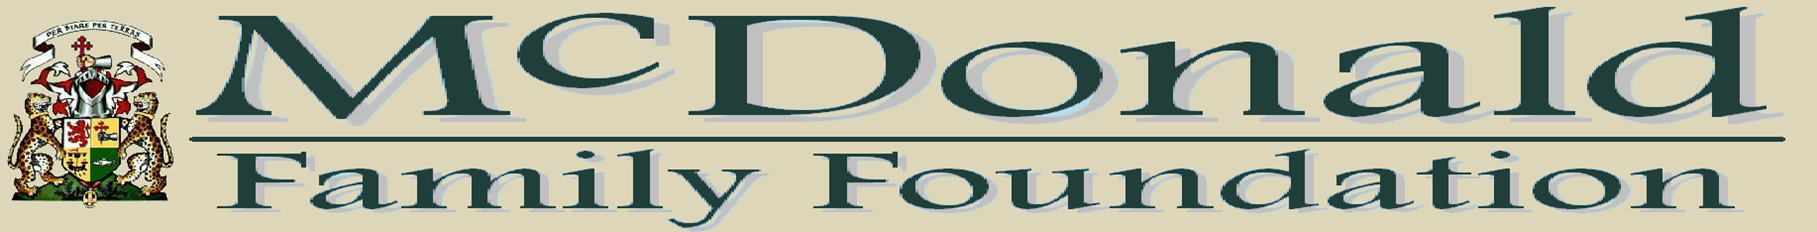 Mcdonald Family Foundation